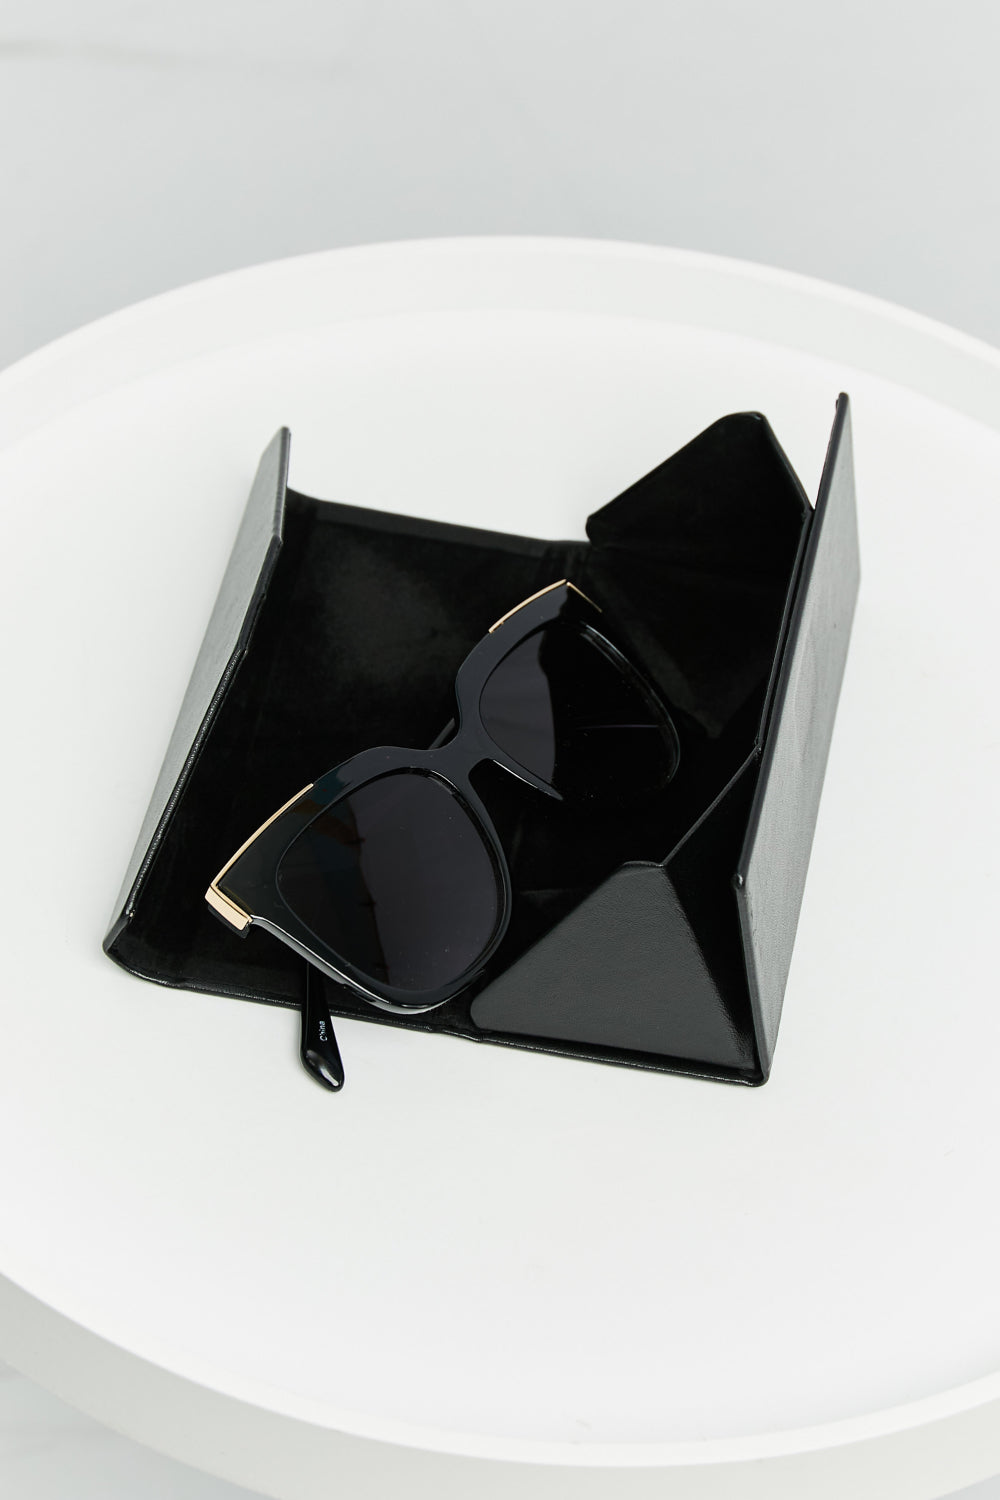 - Wayfare Polycarbonate Frame Sunglasses - 3 colors - Sunglasses at TFC&H Co.